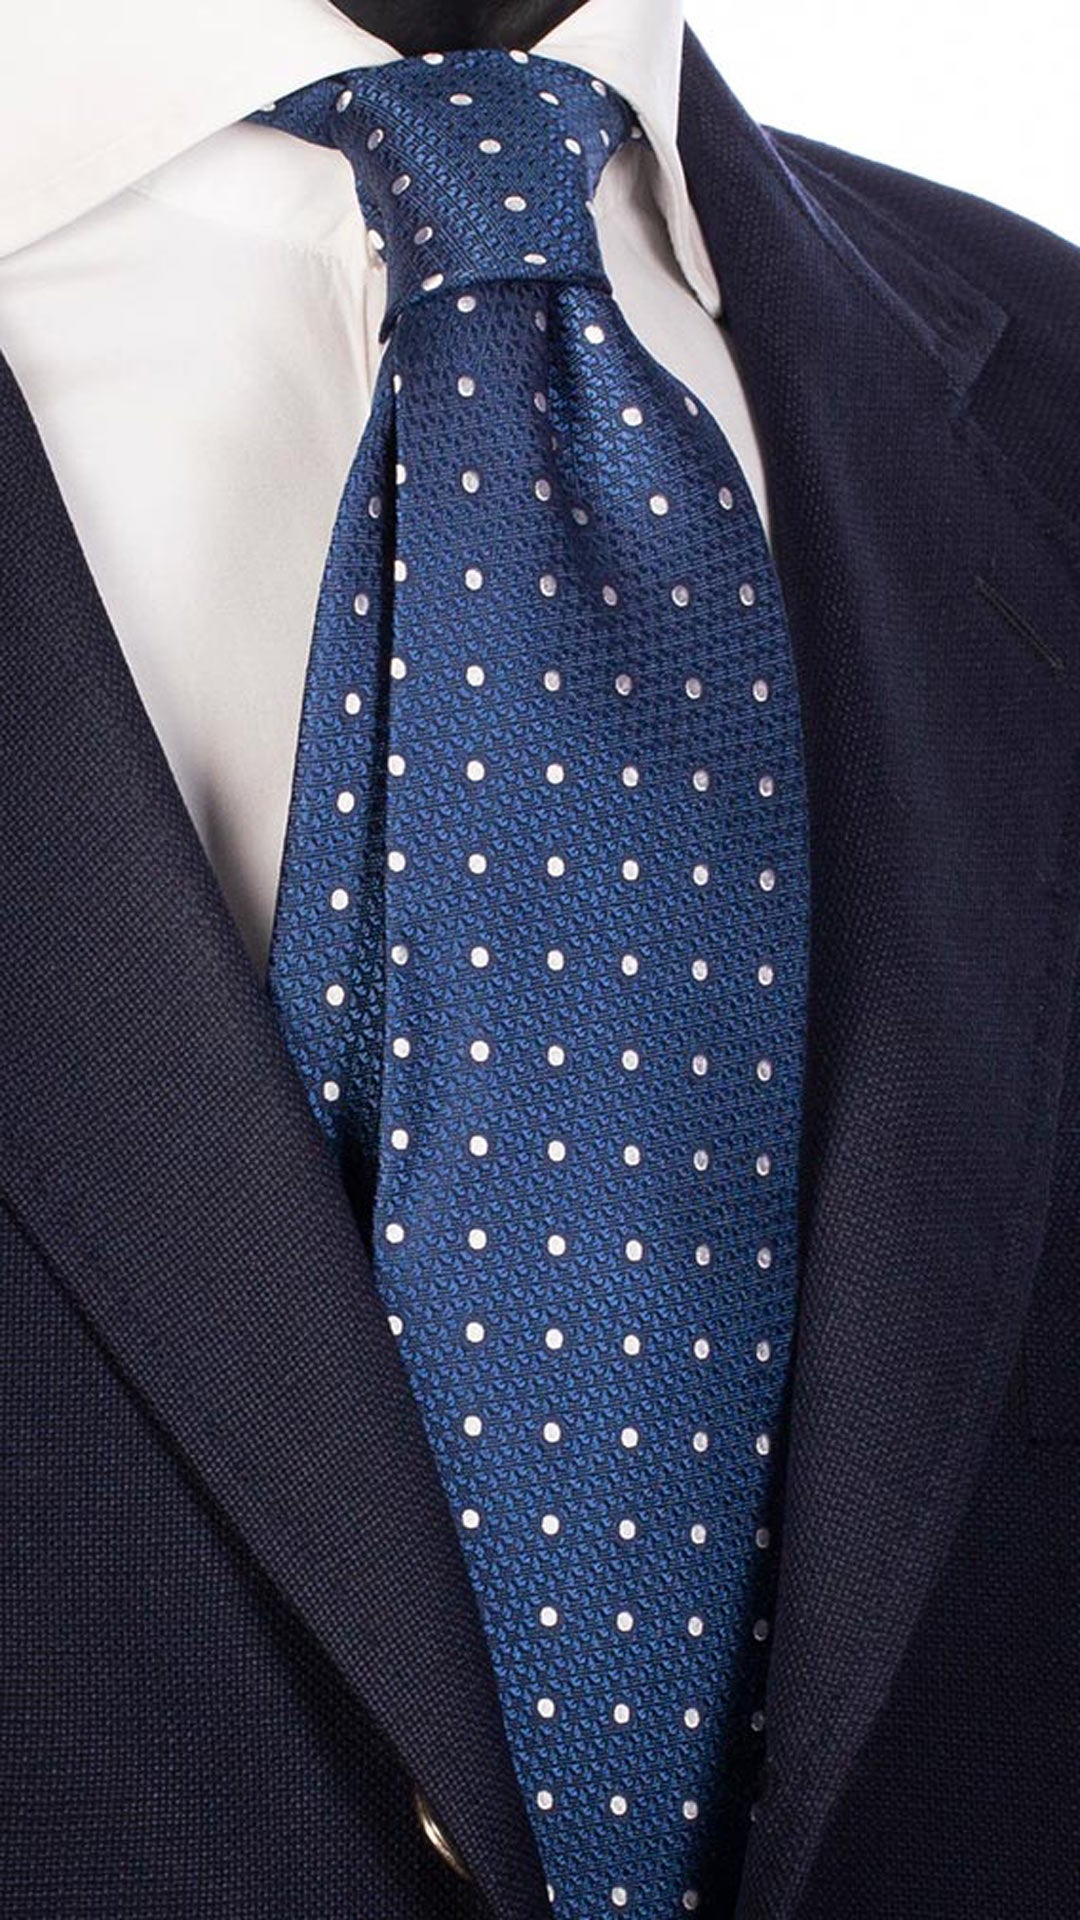 Cravatta da Cerimonia di Seta Bluette Fantasia Tono su Tono Pois Bianchi CY4534 MAde in Italy Graffeo Cravatte